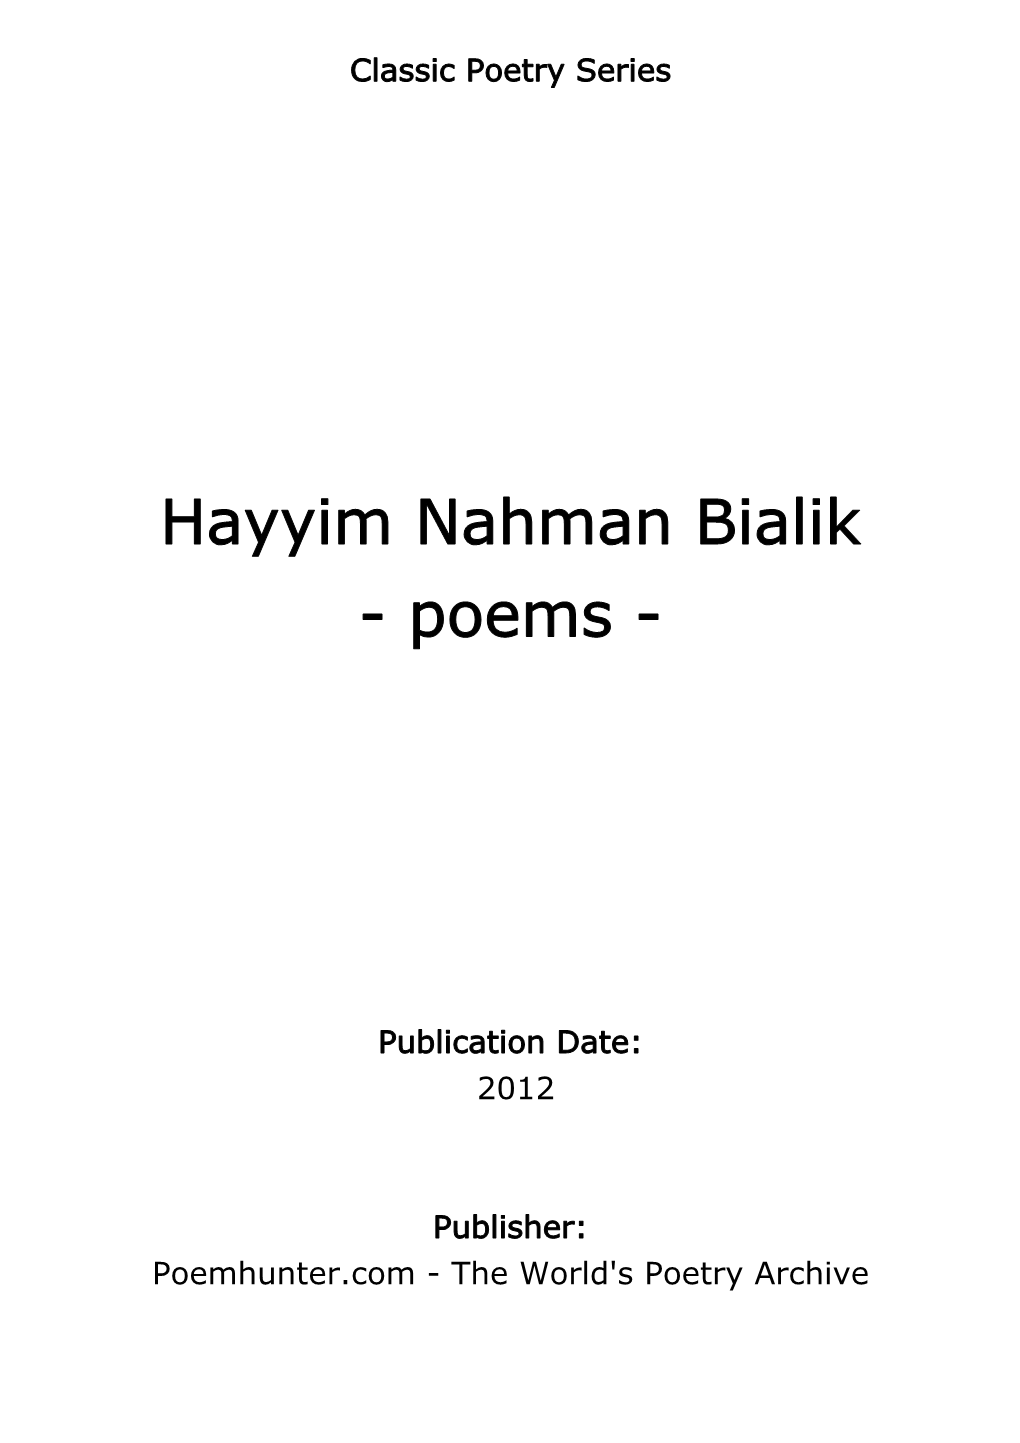 Hayyim Nahman Bialik - Poems